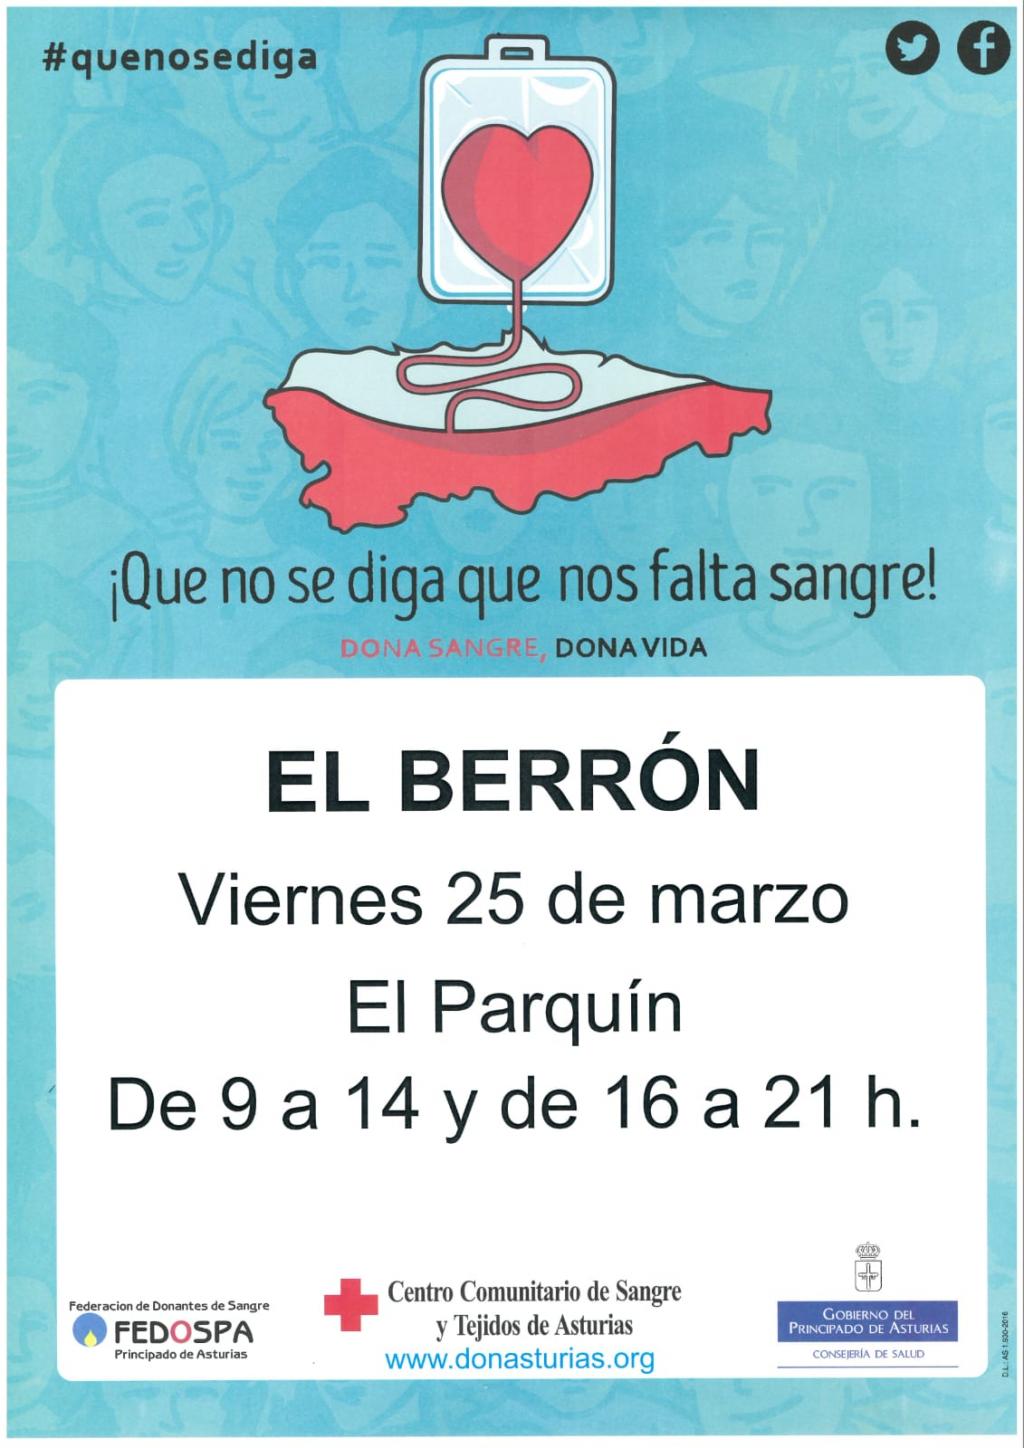 El Tapin - El autobús para donar sangre estará en El Berrón el viernes 25 de marzo